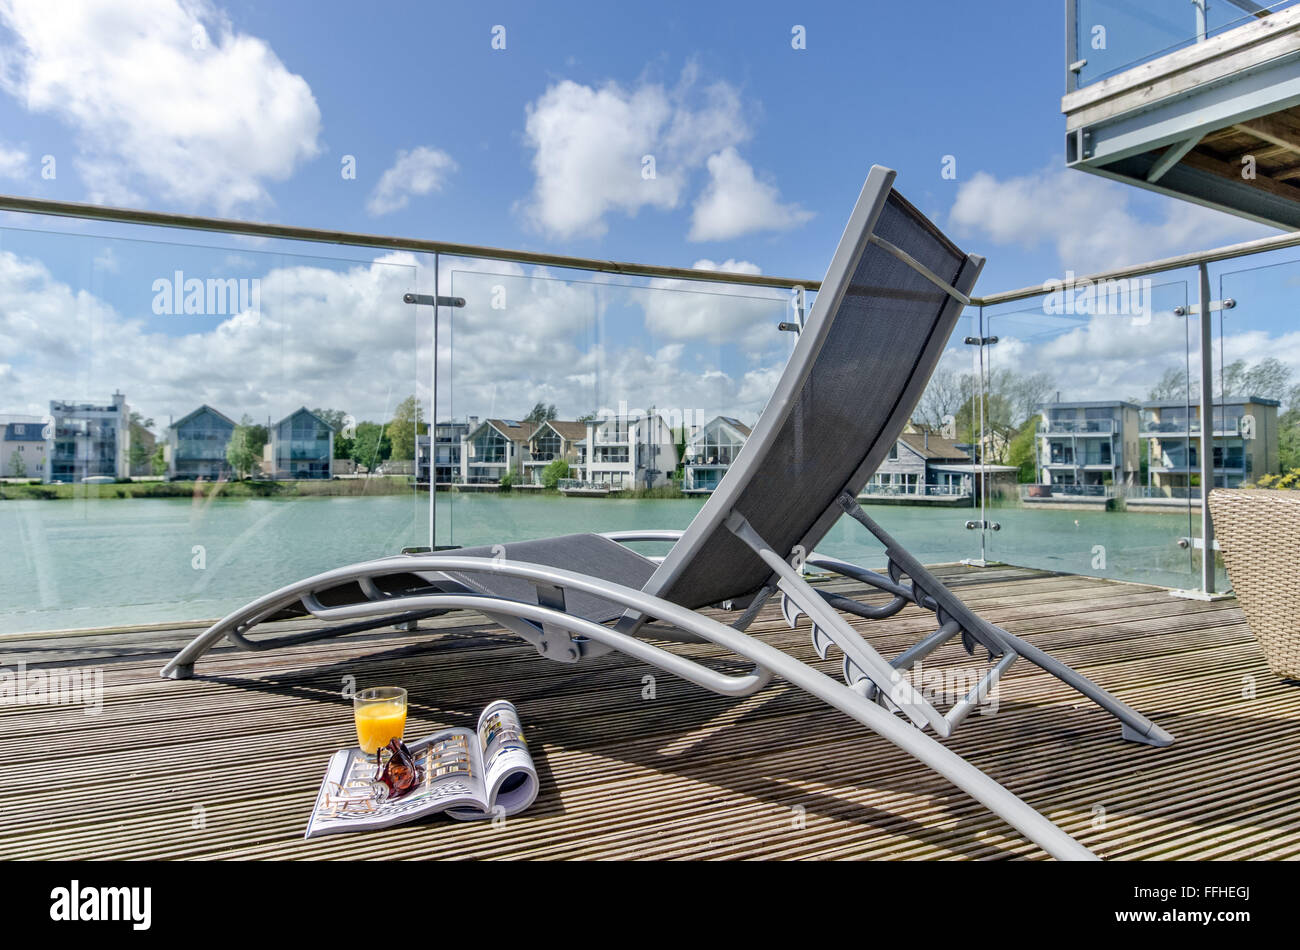 Un ombrellone in una decking, waterside veranda che si affaccia su un lago & waterfront homes, South Cerney, Cotswolds, REGNO UNITO Foto Stock